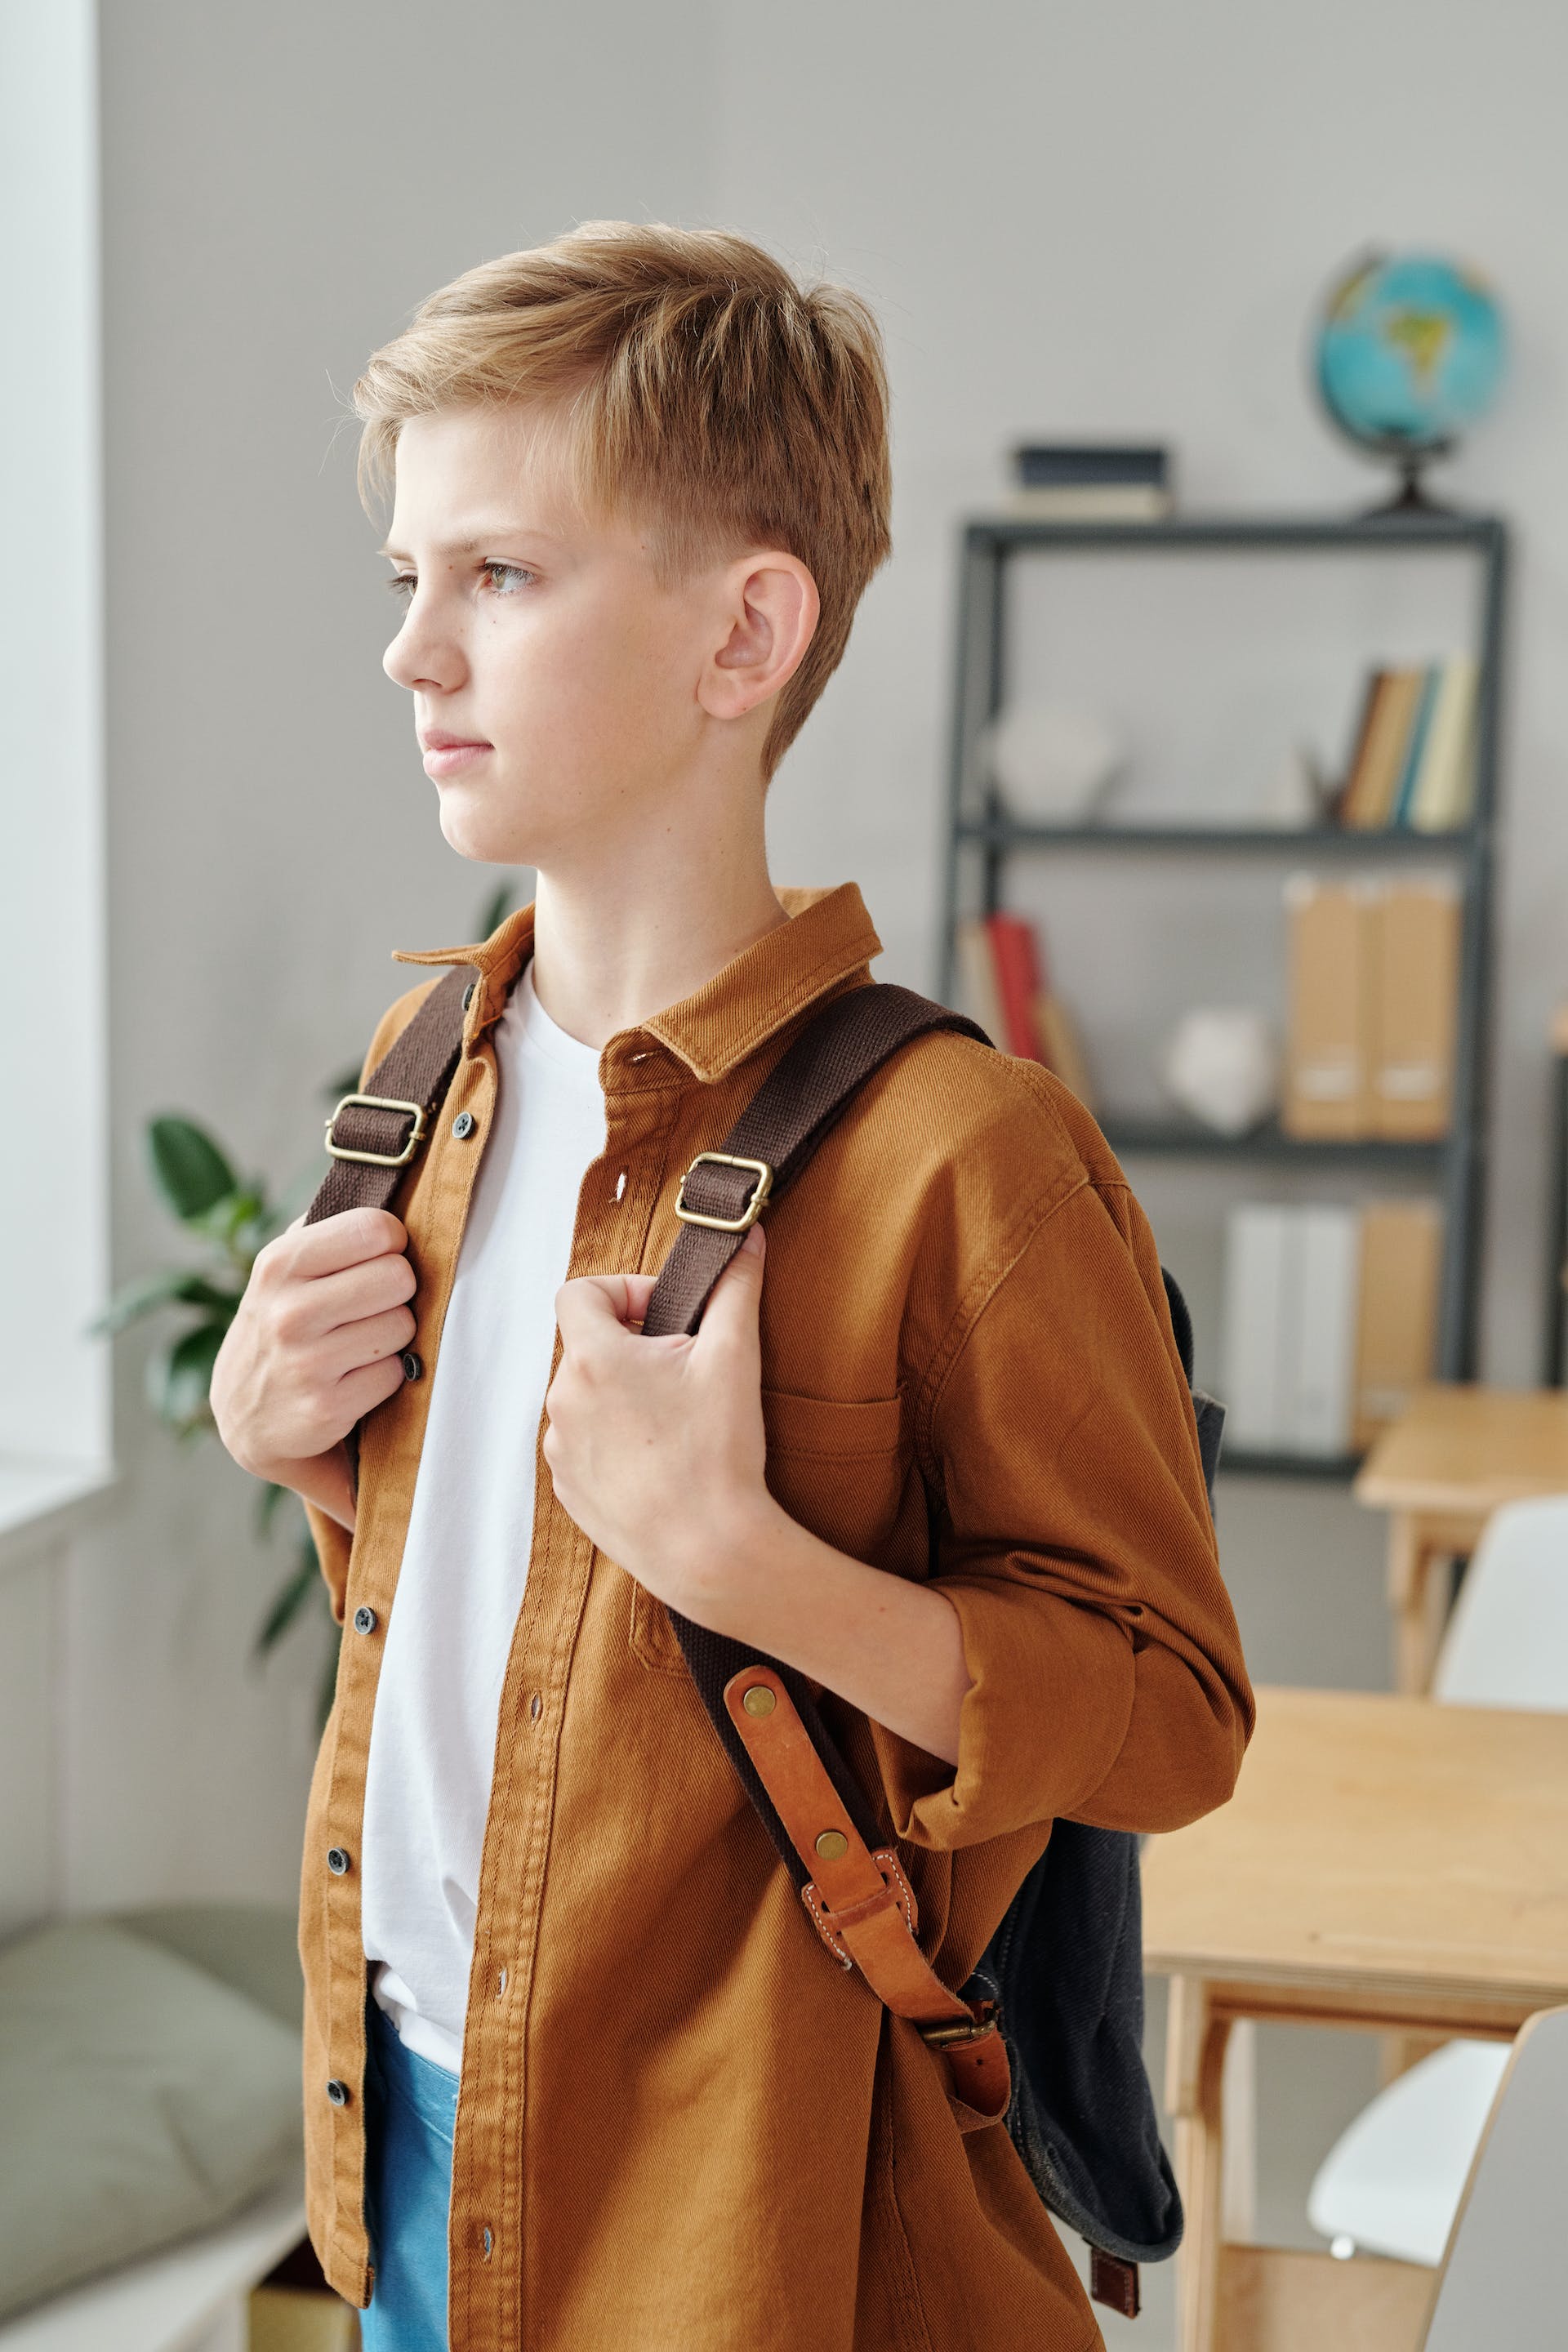 Un jeune garçon triste portant un sac à dos | Source : Pexels